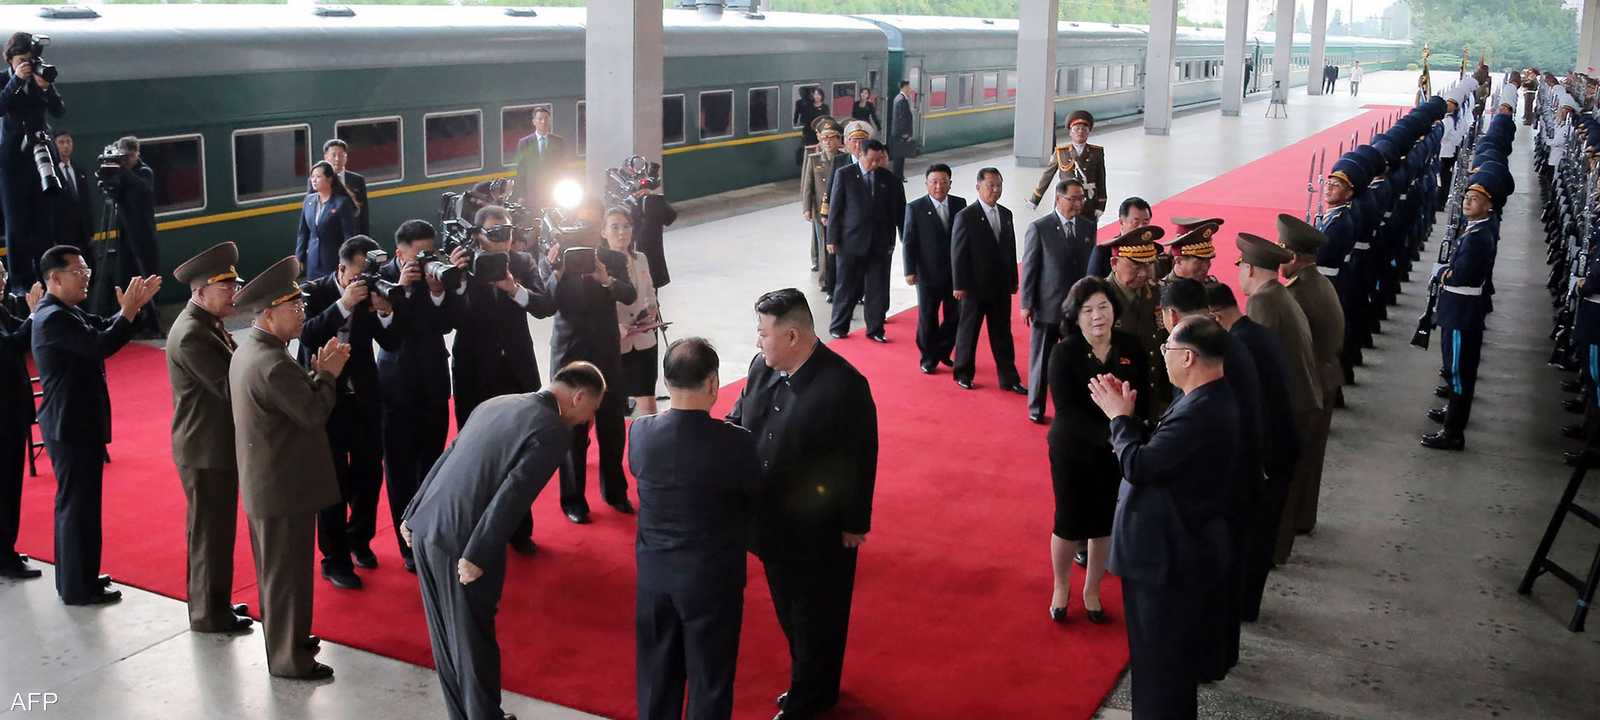 قطار كيم جونغ.. "قلعة نقالة" مصفحة